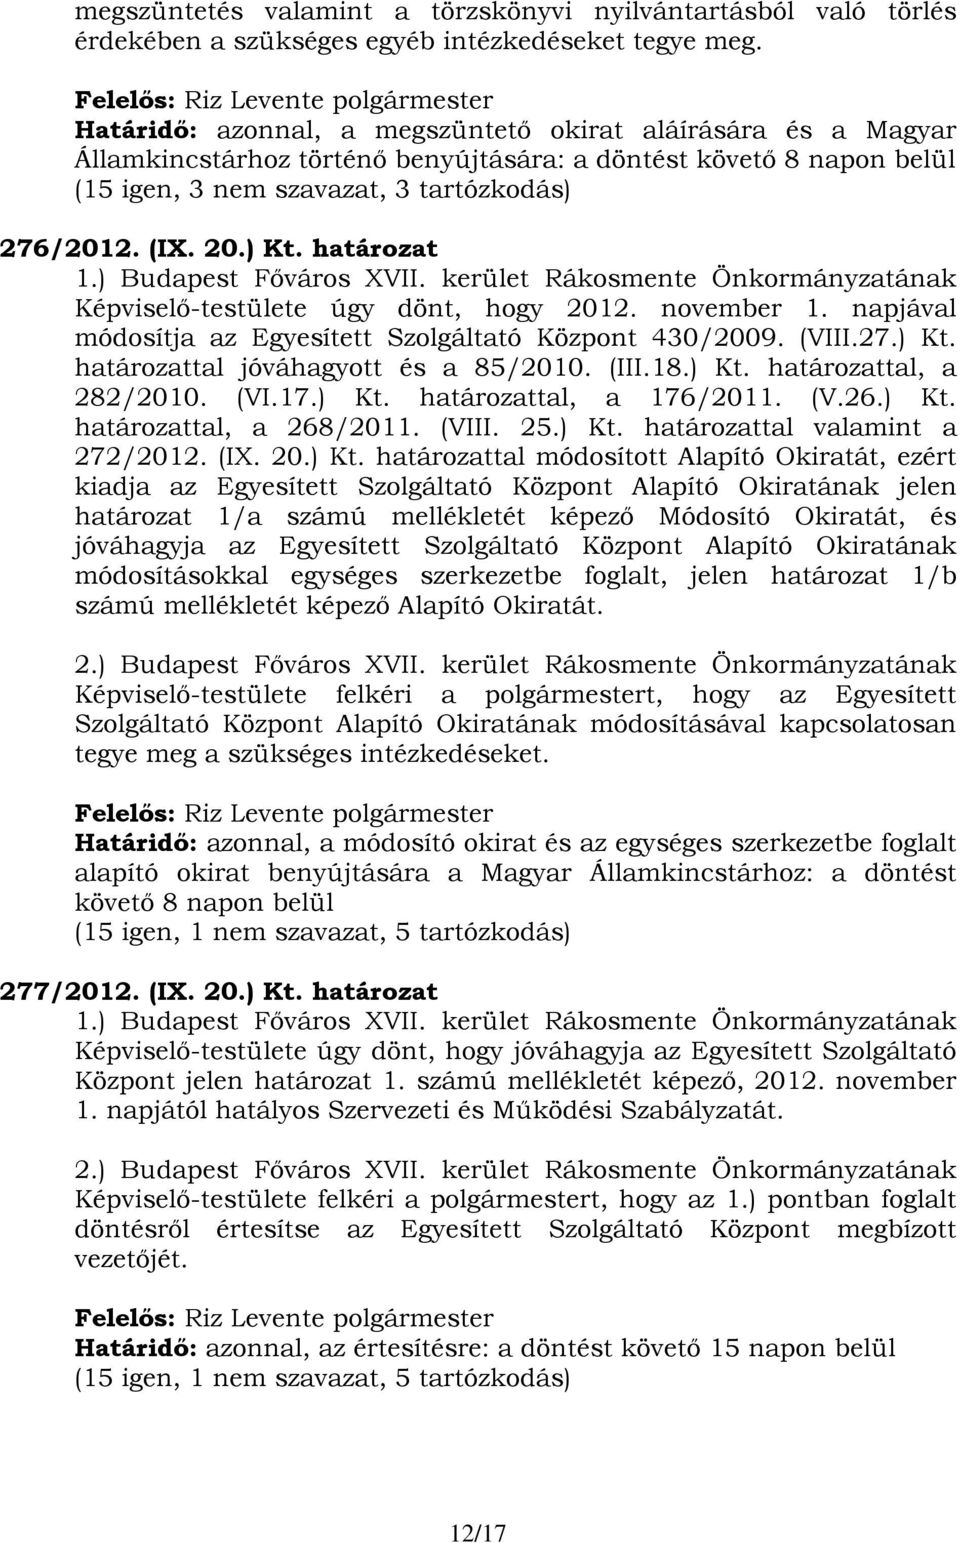 határozat 1.) Budapest Főváros XVII. kerület Rákosmente Önkormányzatának Képviselő-testülete úgy dönt, hogy 2012. november 1. napjával módosítja az Egyesített Szolgáltató Központ 430/2009. (VIII.27.